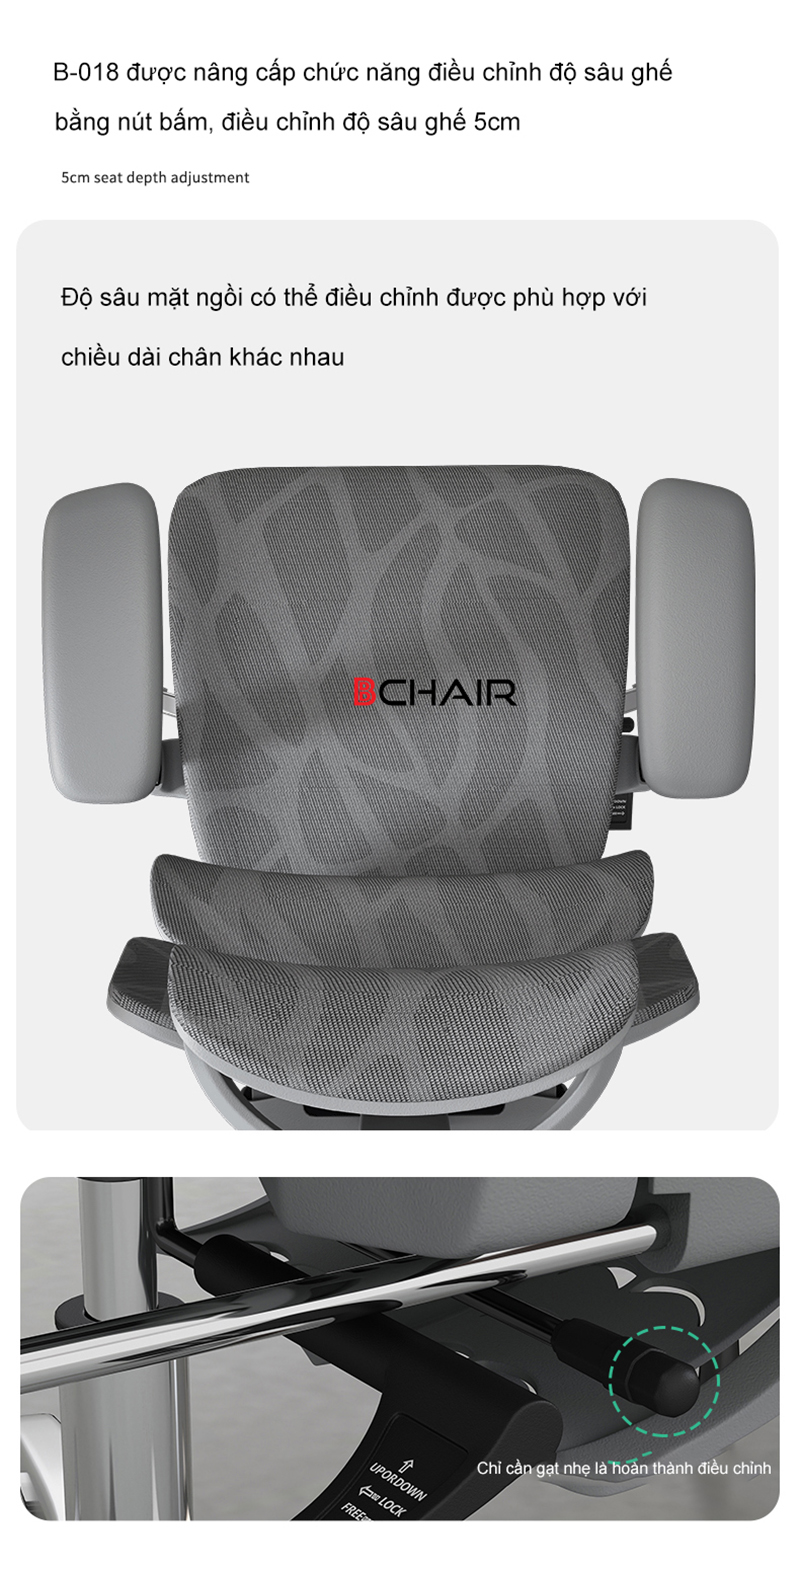 Mặt ngồi ghế được nâng cấp có thể điều chỉnh độ sâu dễ dàng